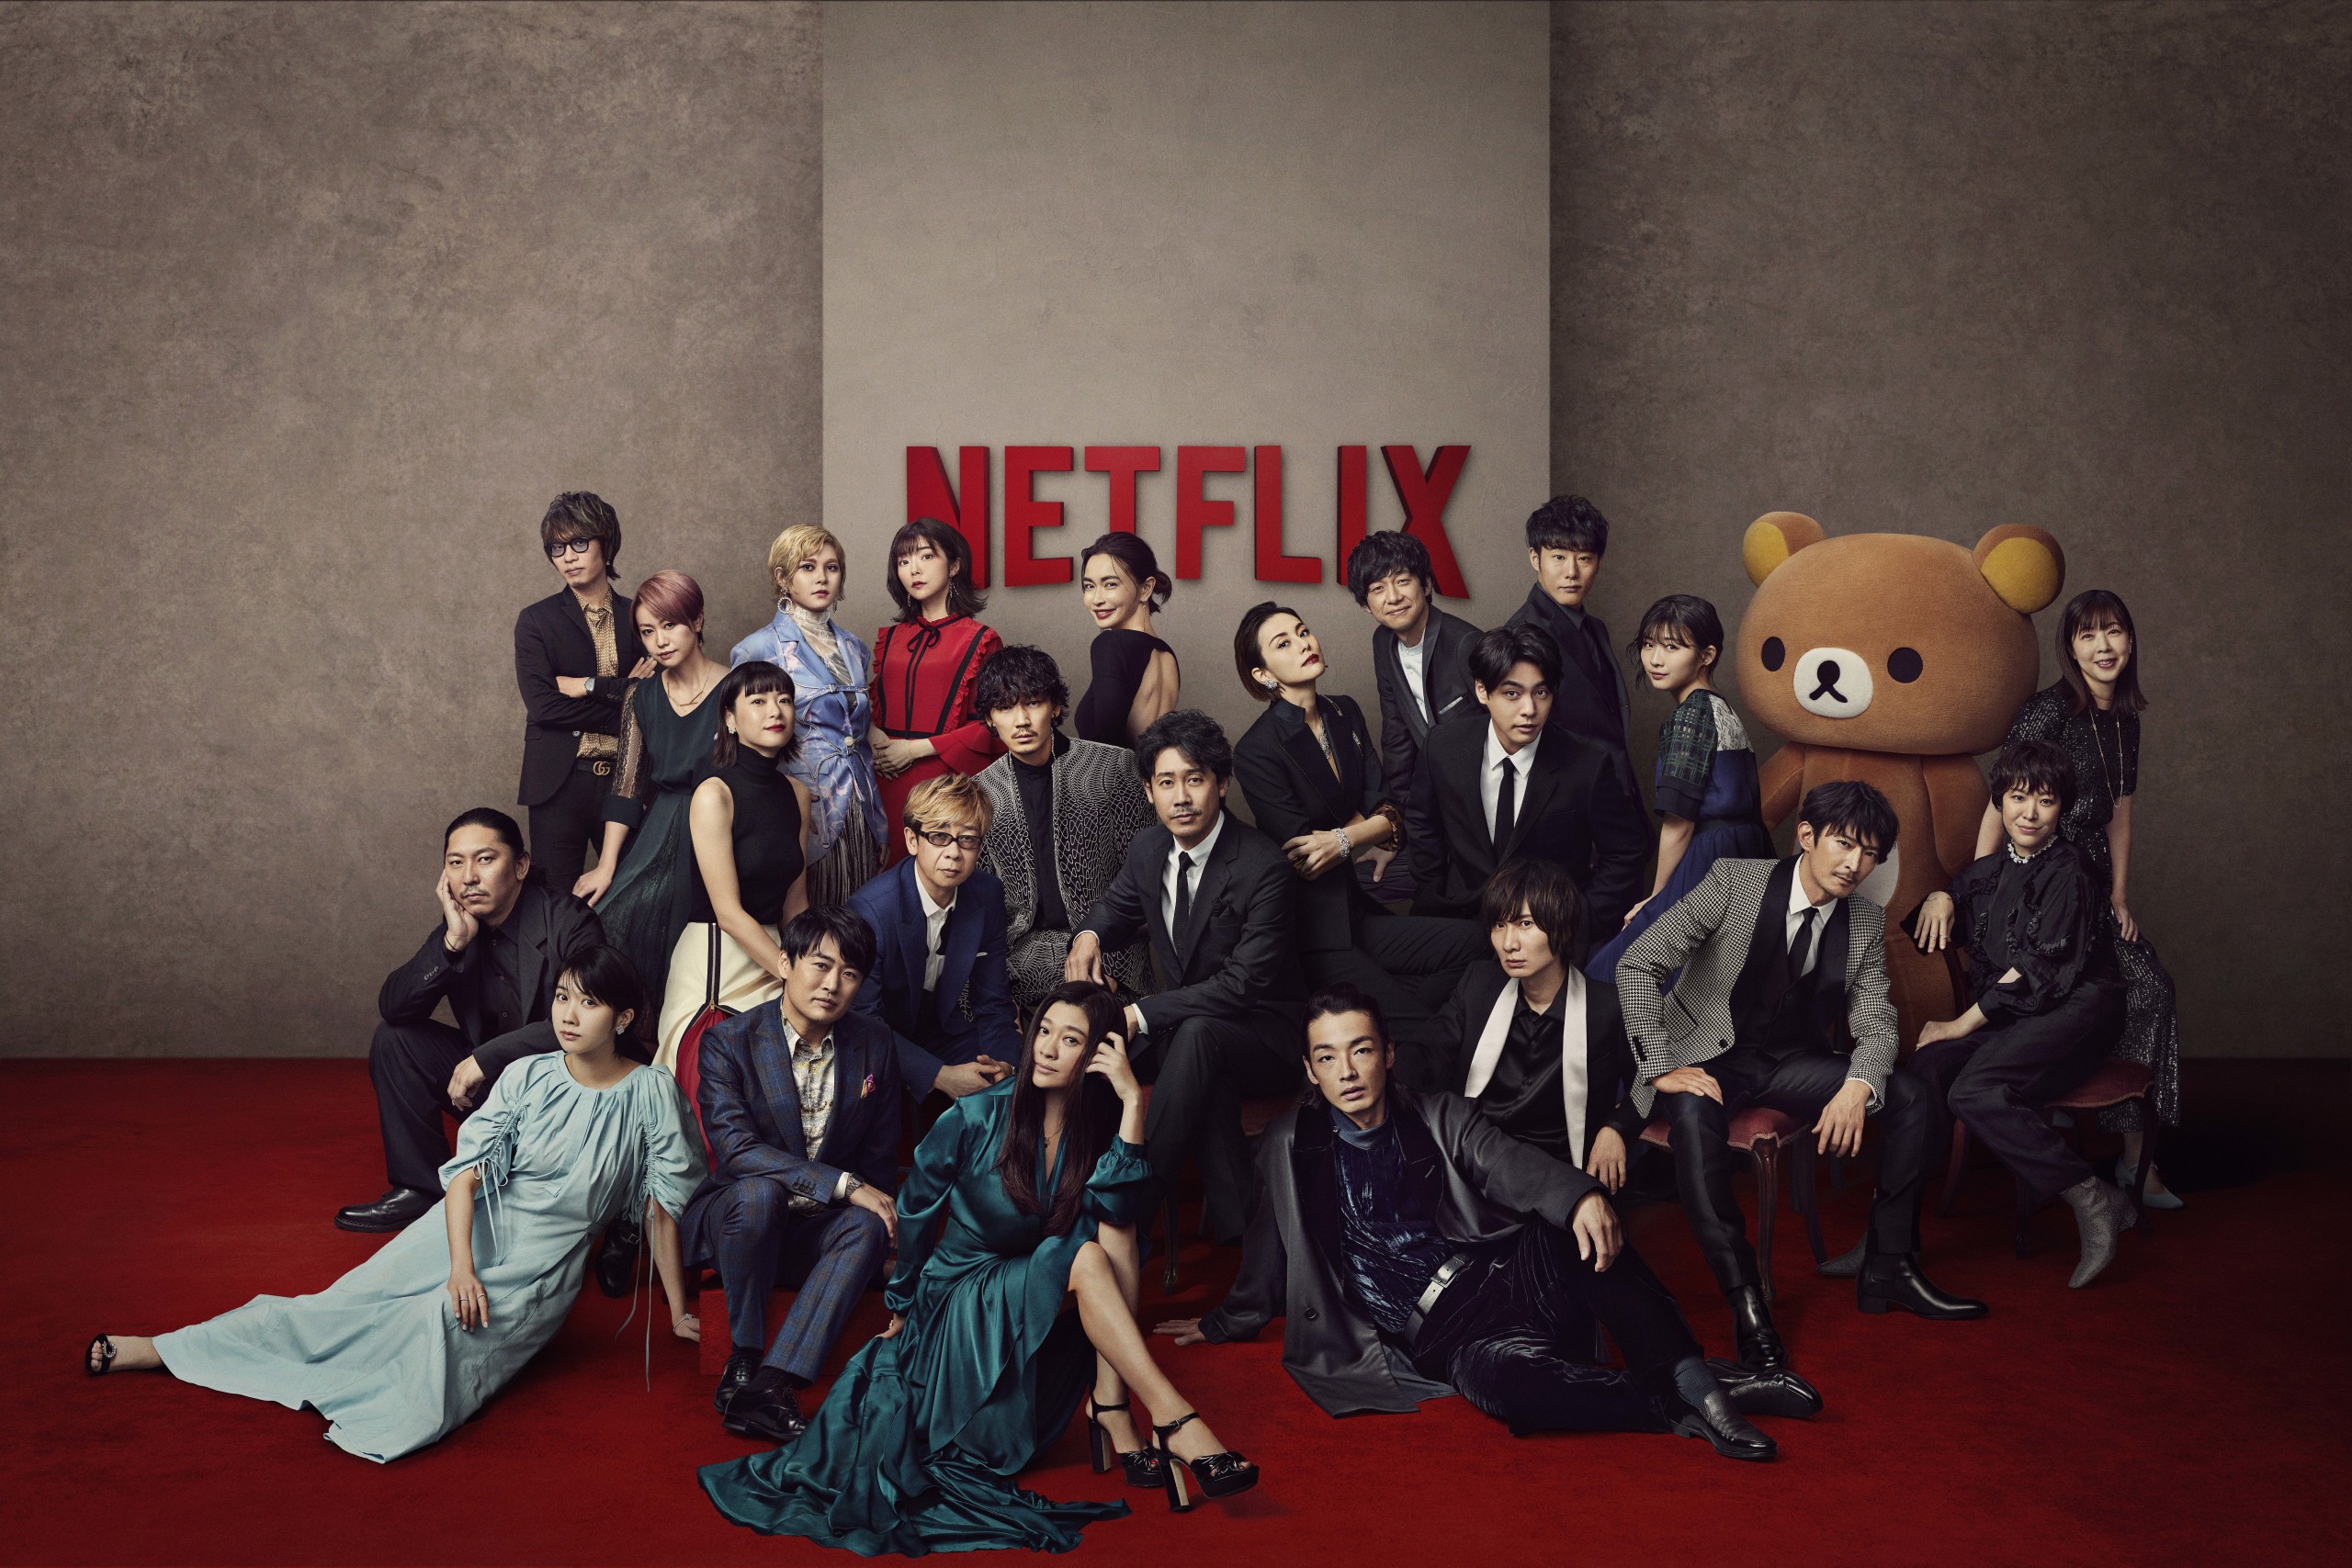 "Netflix Festival Japan 2021" Family Photo released